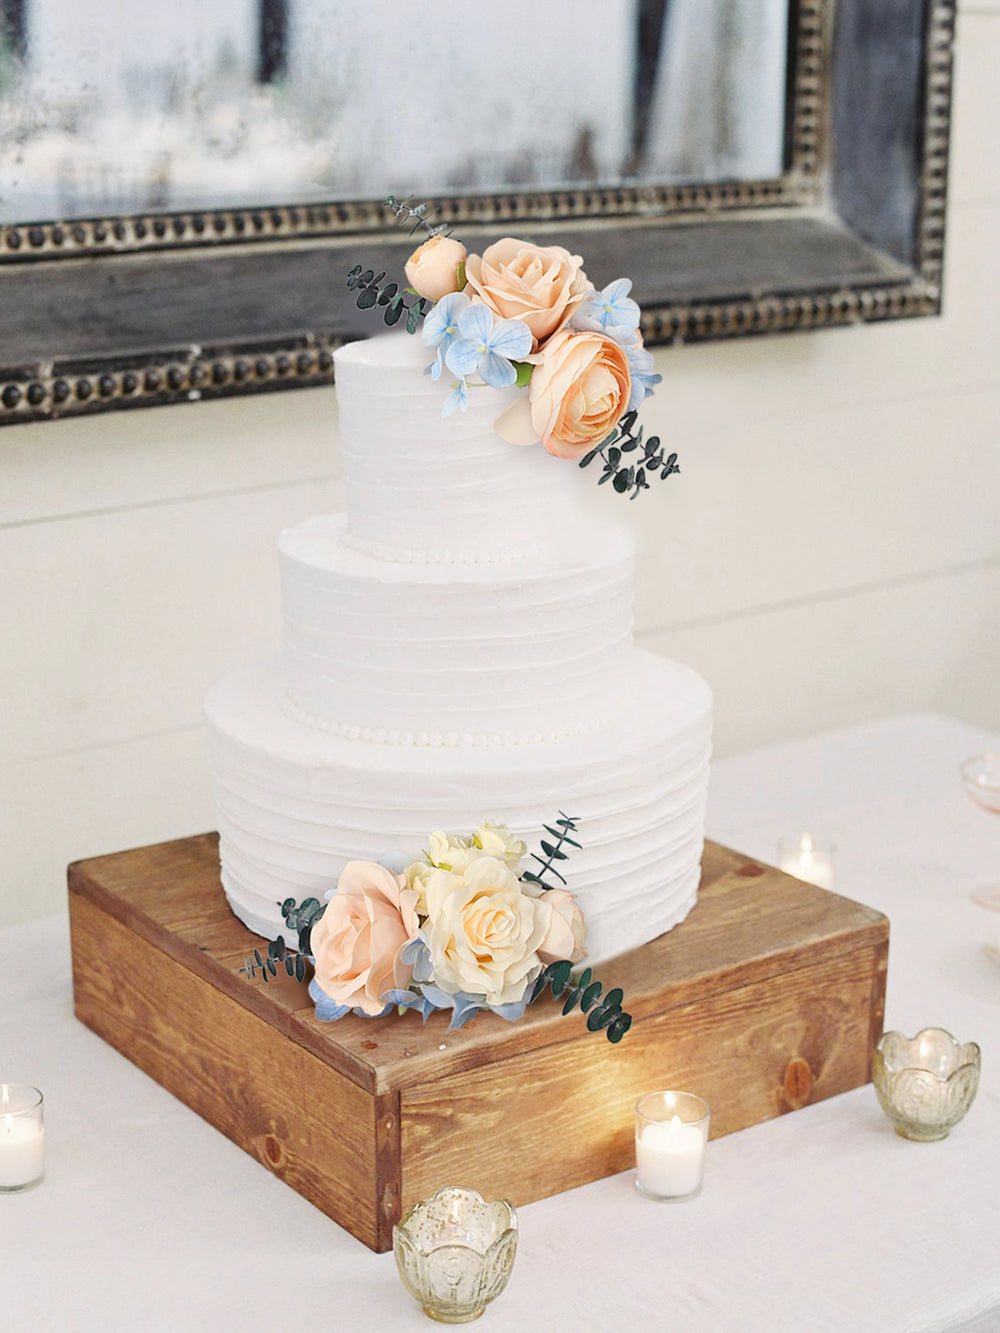 Flower Cake Decorations Flower decor wedding topper cake – Rinlong